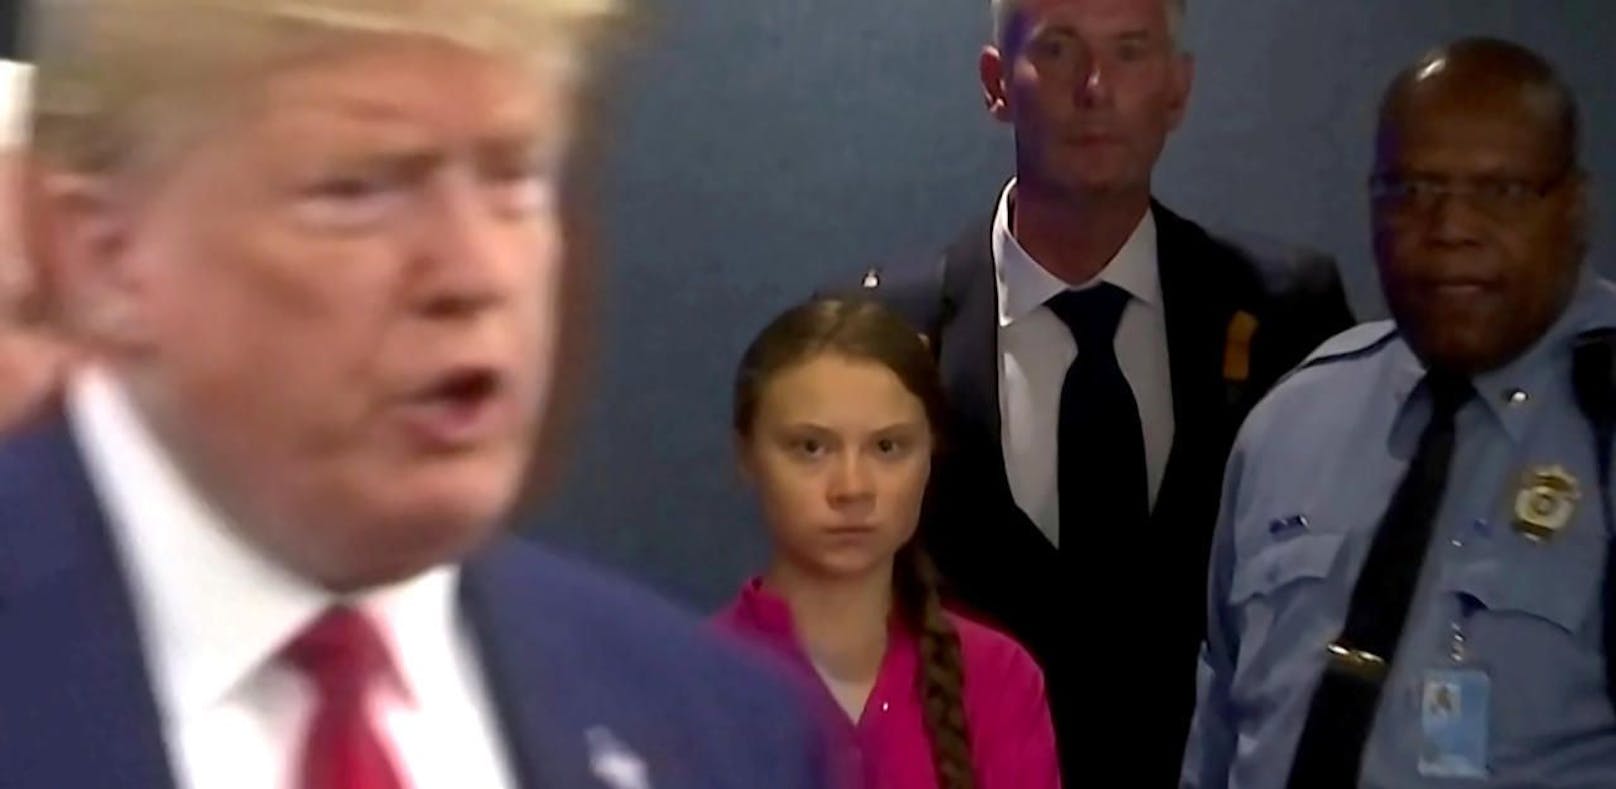 Dieser Blick ging um die Welt: Klimaaktivistin Greta Thunberg beobachtet die Rede von US-Präsident Donald Trump